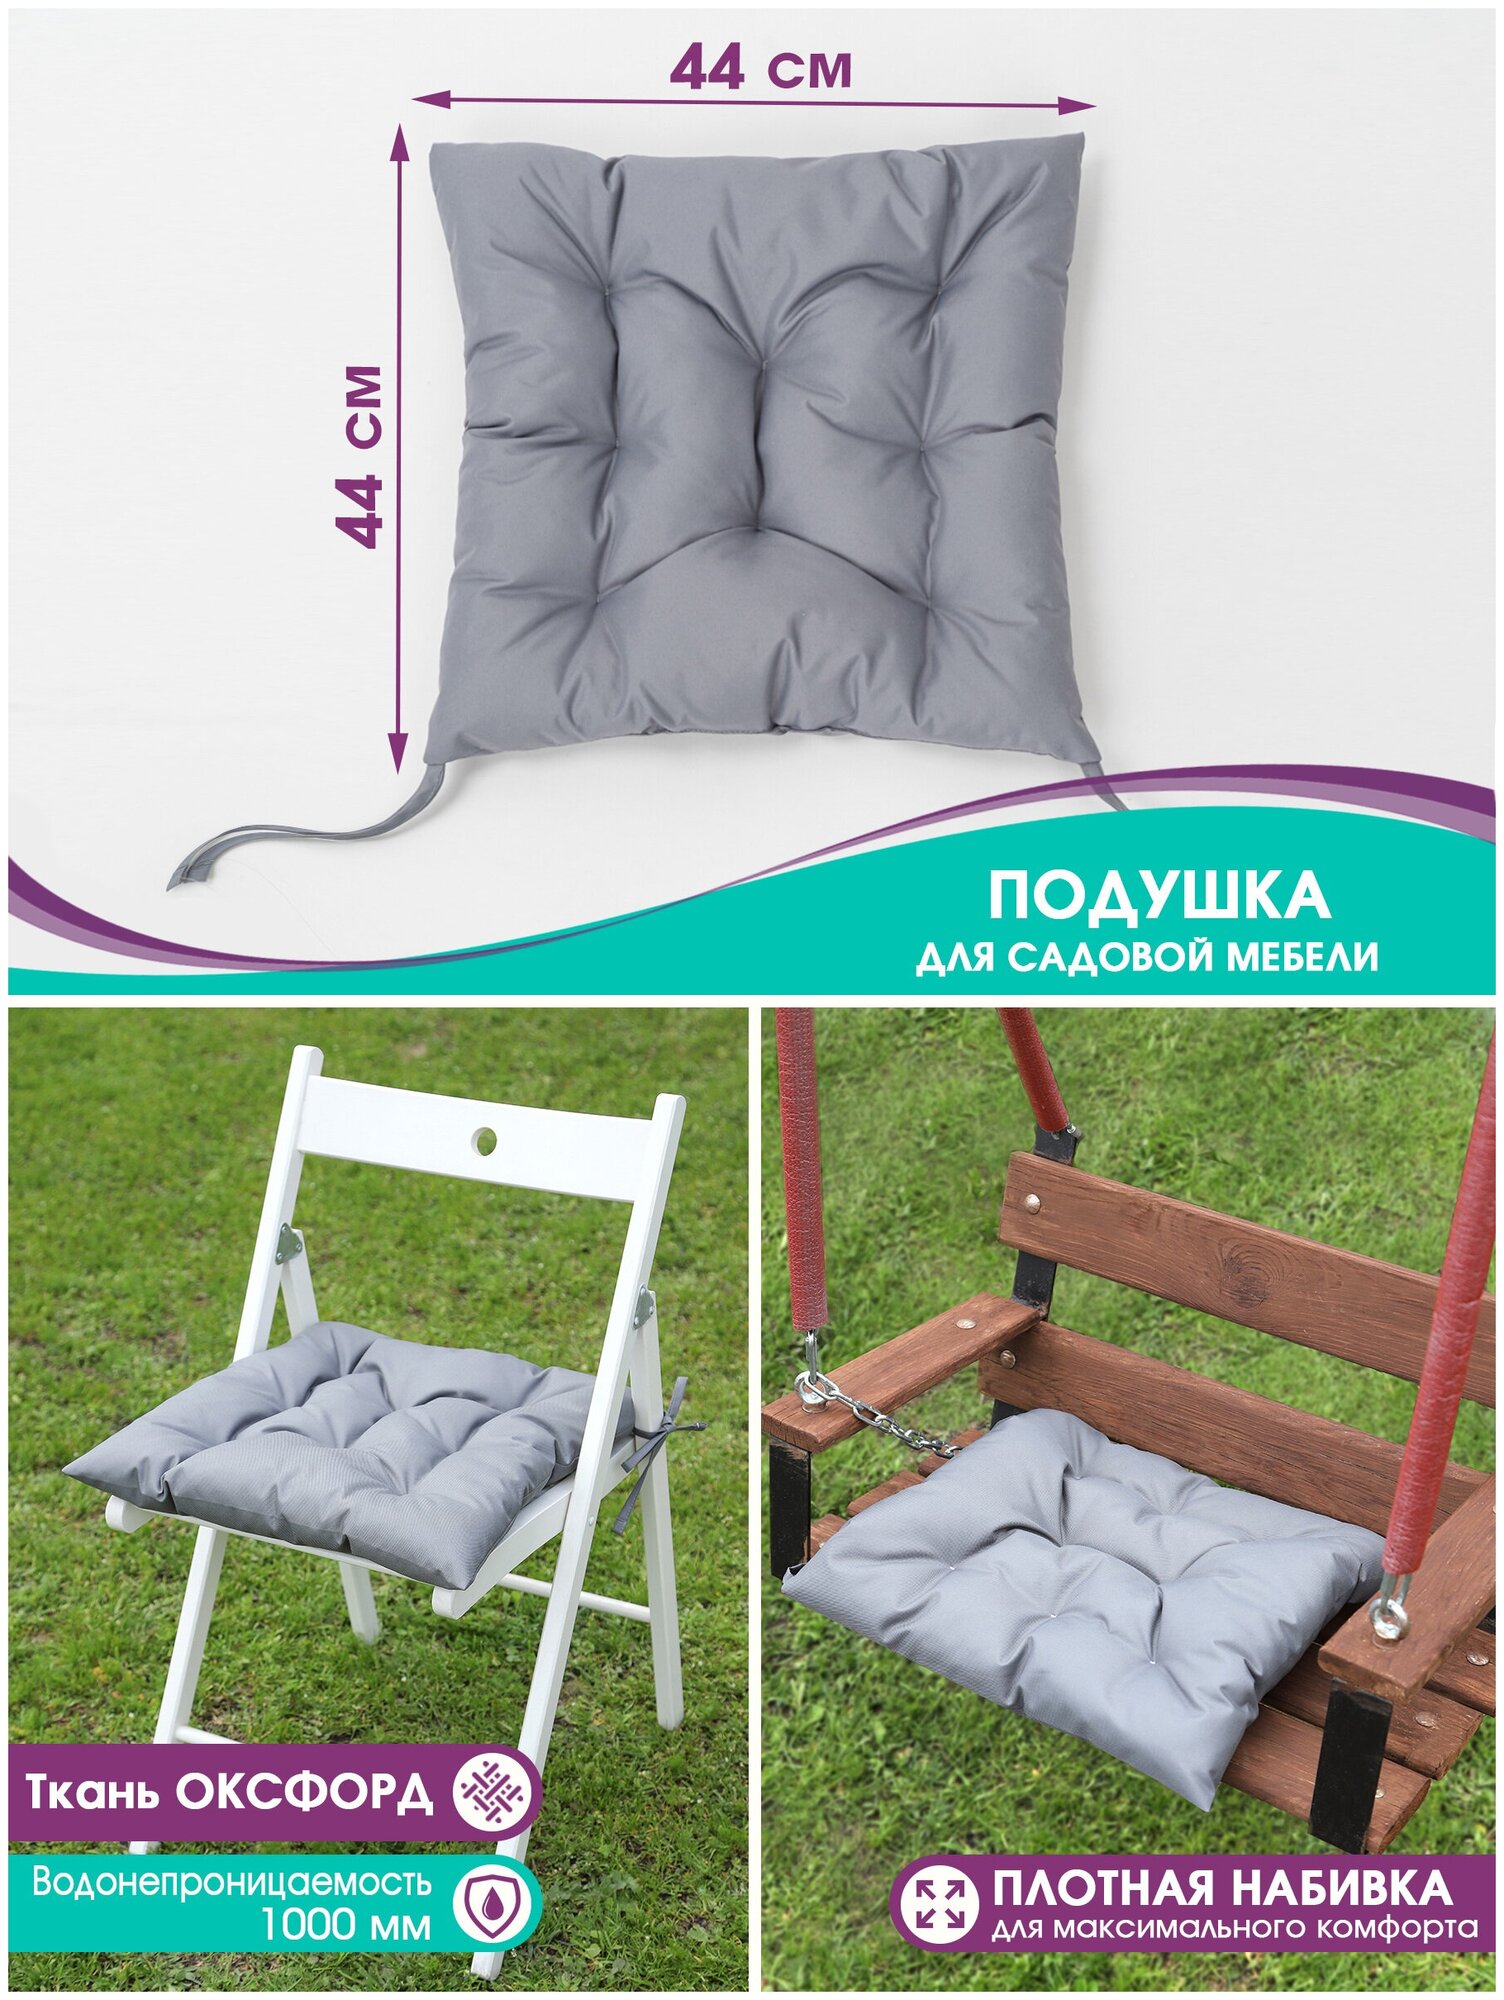 Подушки для садовой мебели Bio-Line, на стул, кресло, для качели, водонепроницаемая, на завязках, 44*44 см, серая,1шт